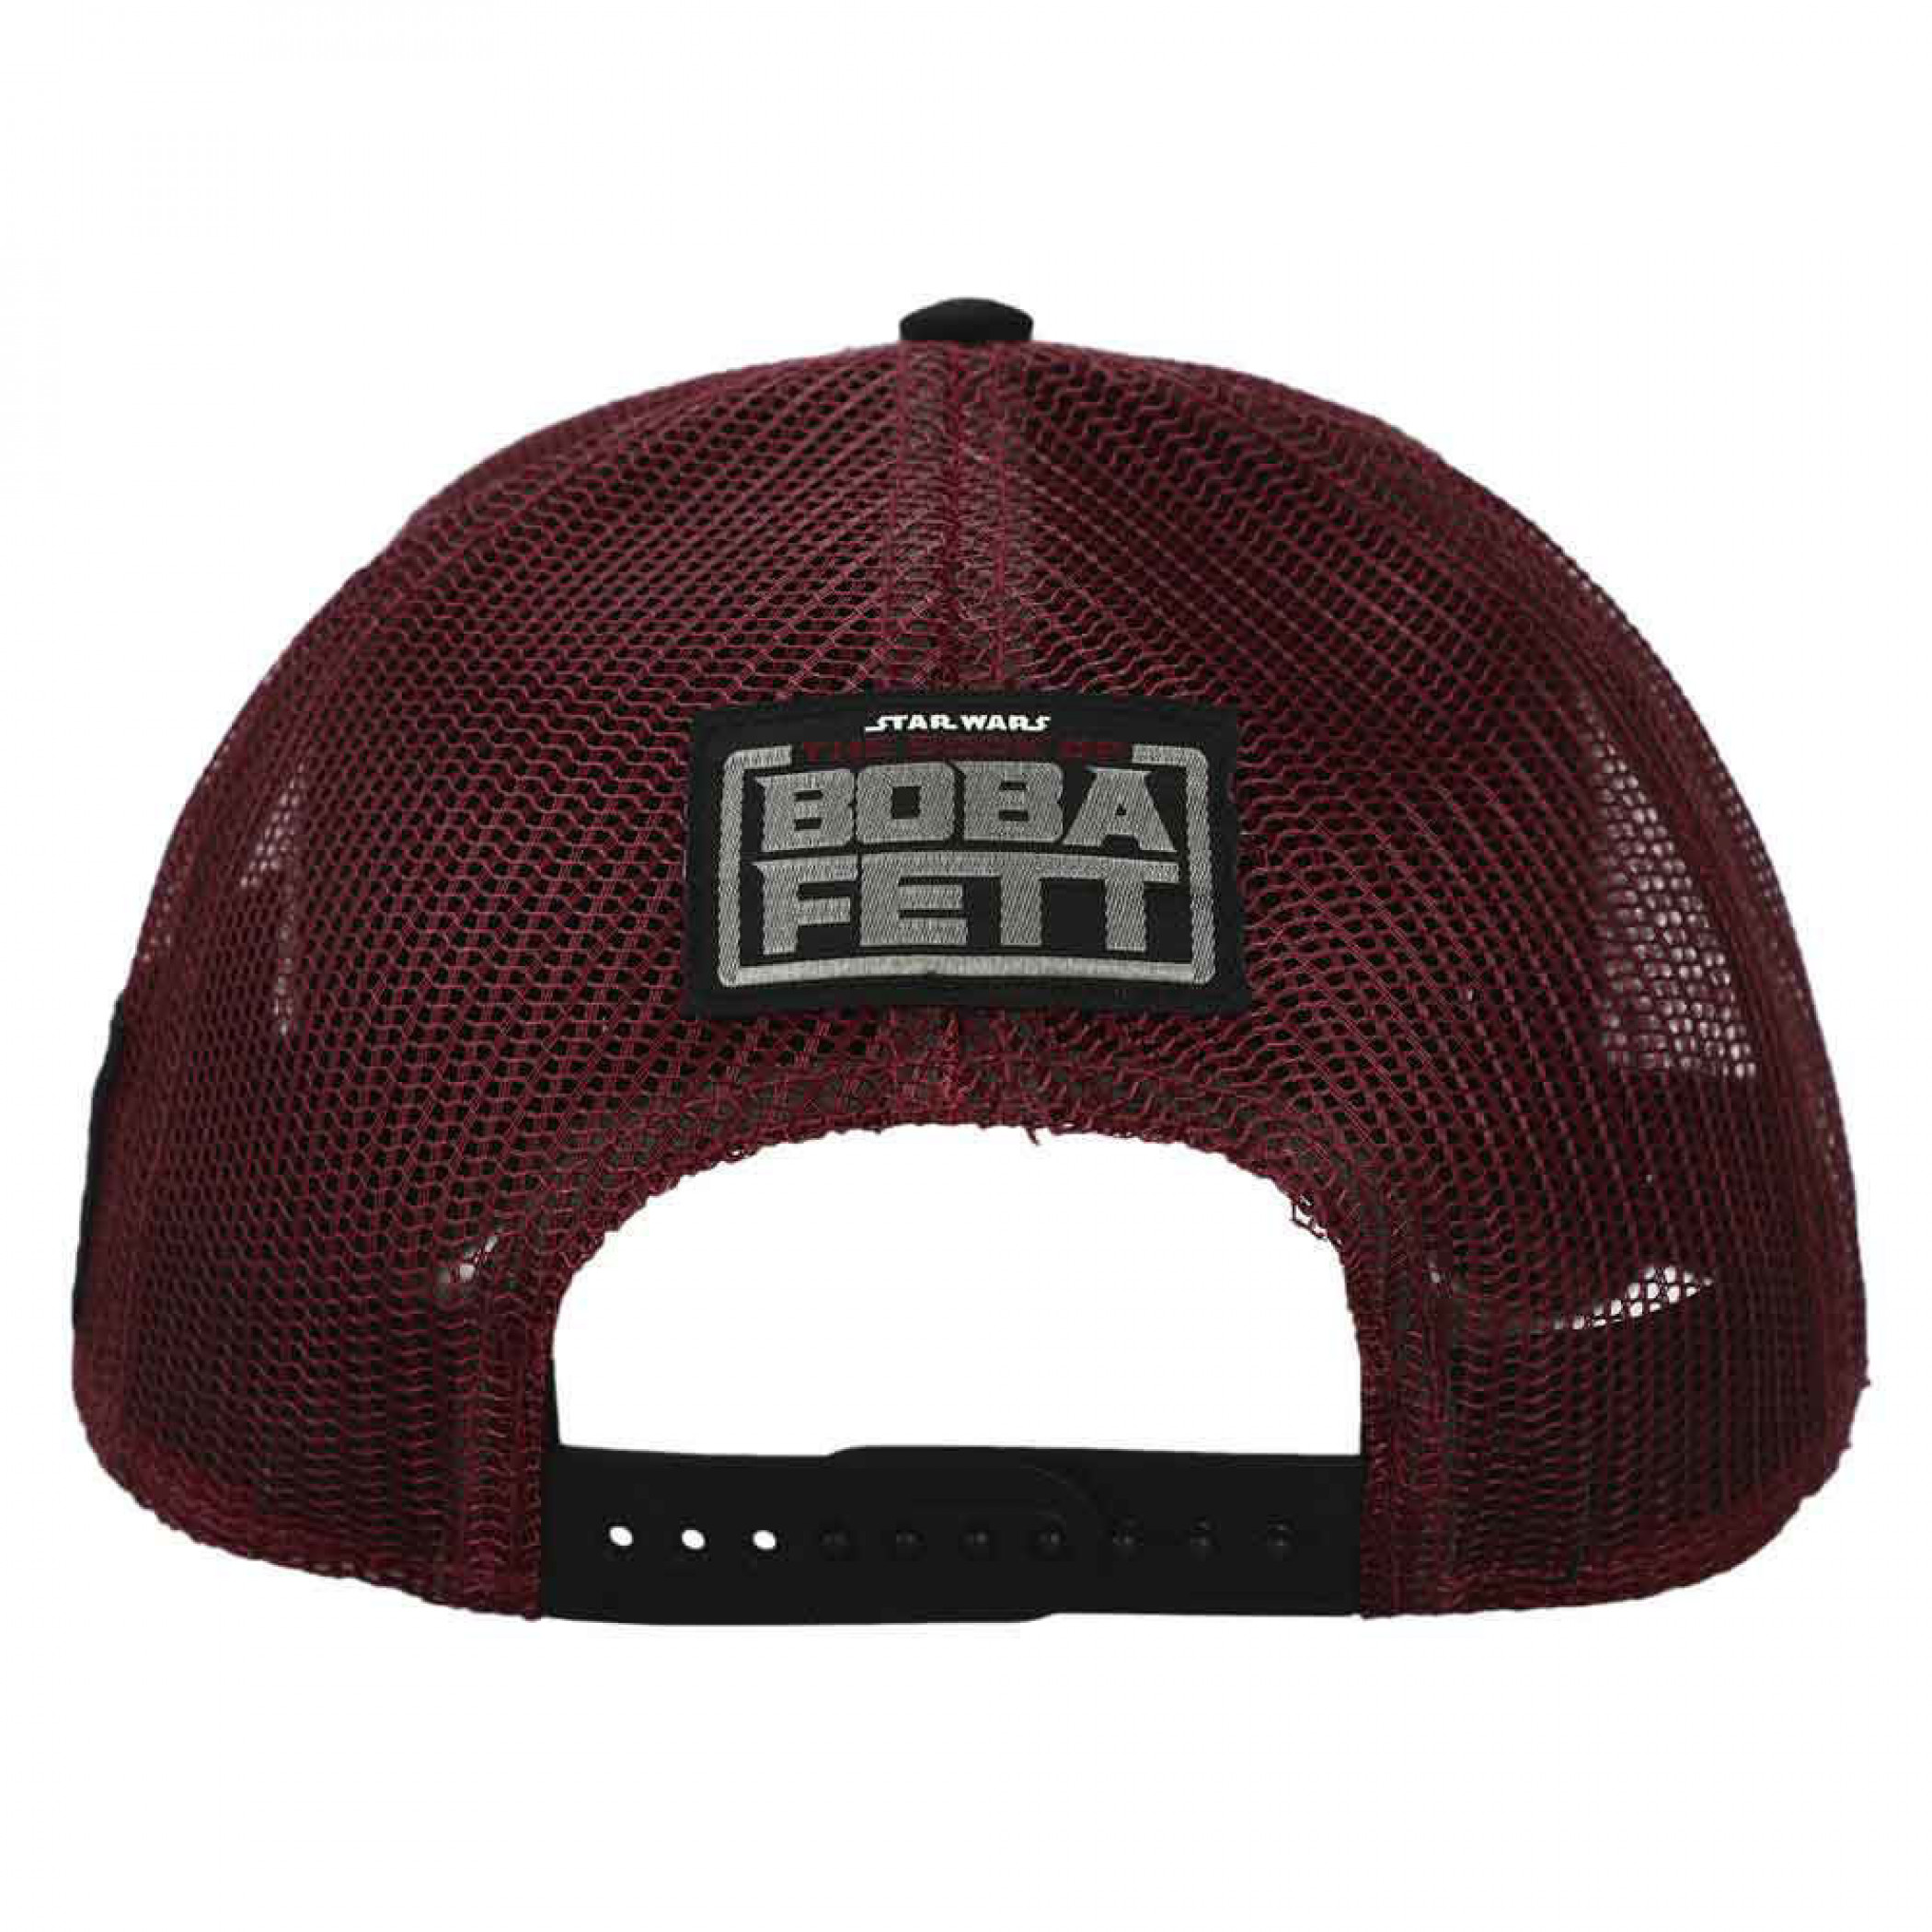 Star Wars Boba Fett Episode 5 Woven Patch Trucker Hat